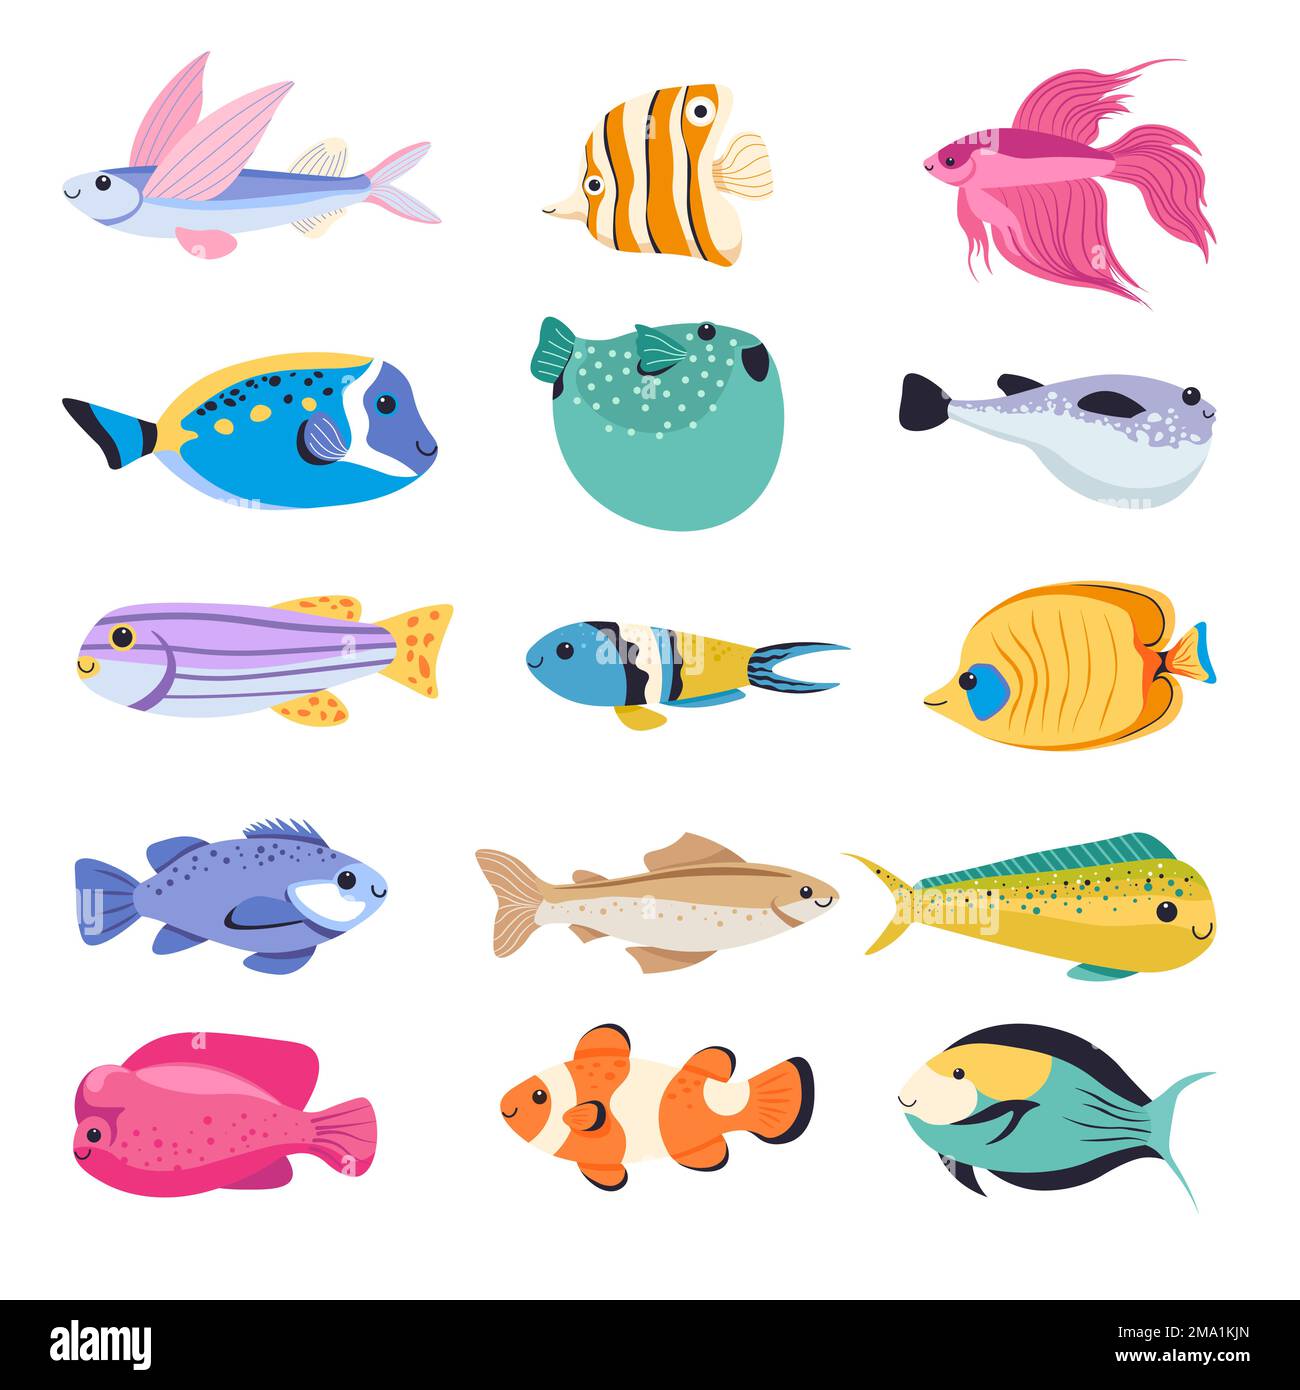 Fish types for aquarium, tropical species vector Stock Vector